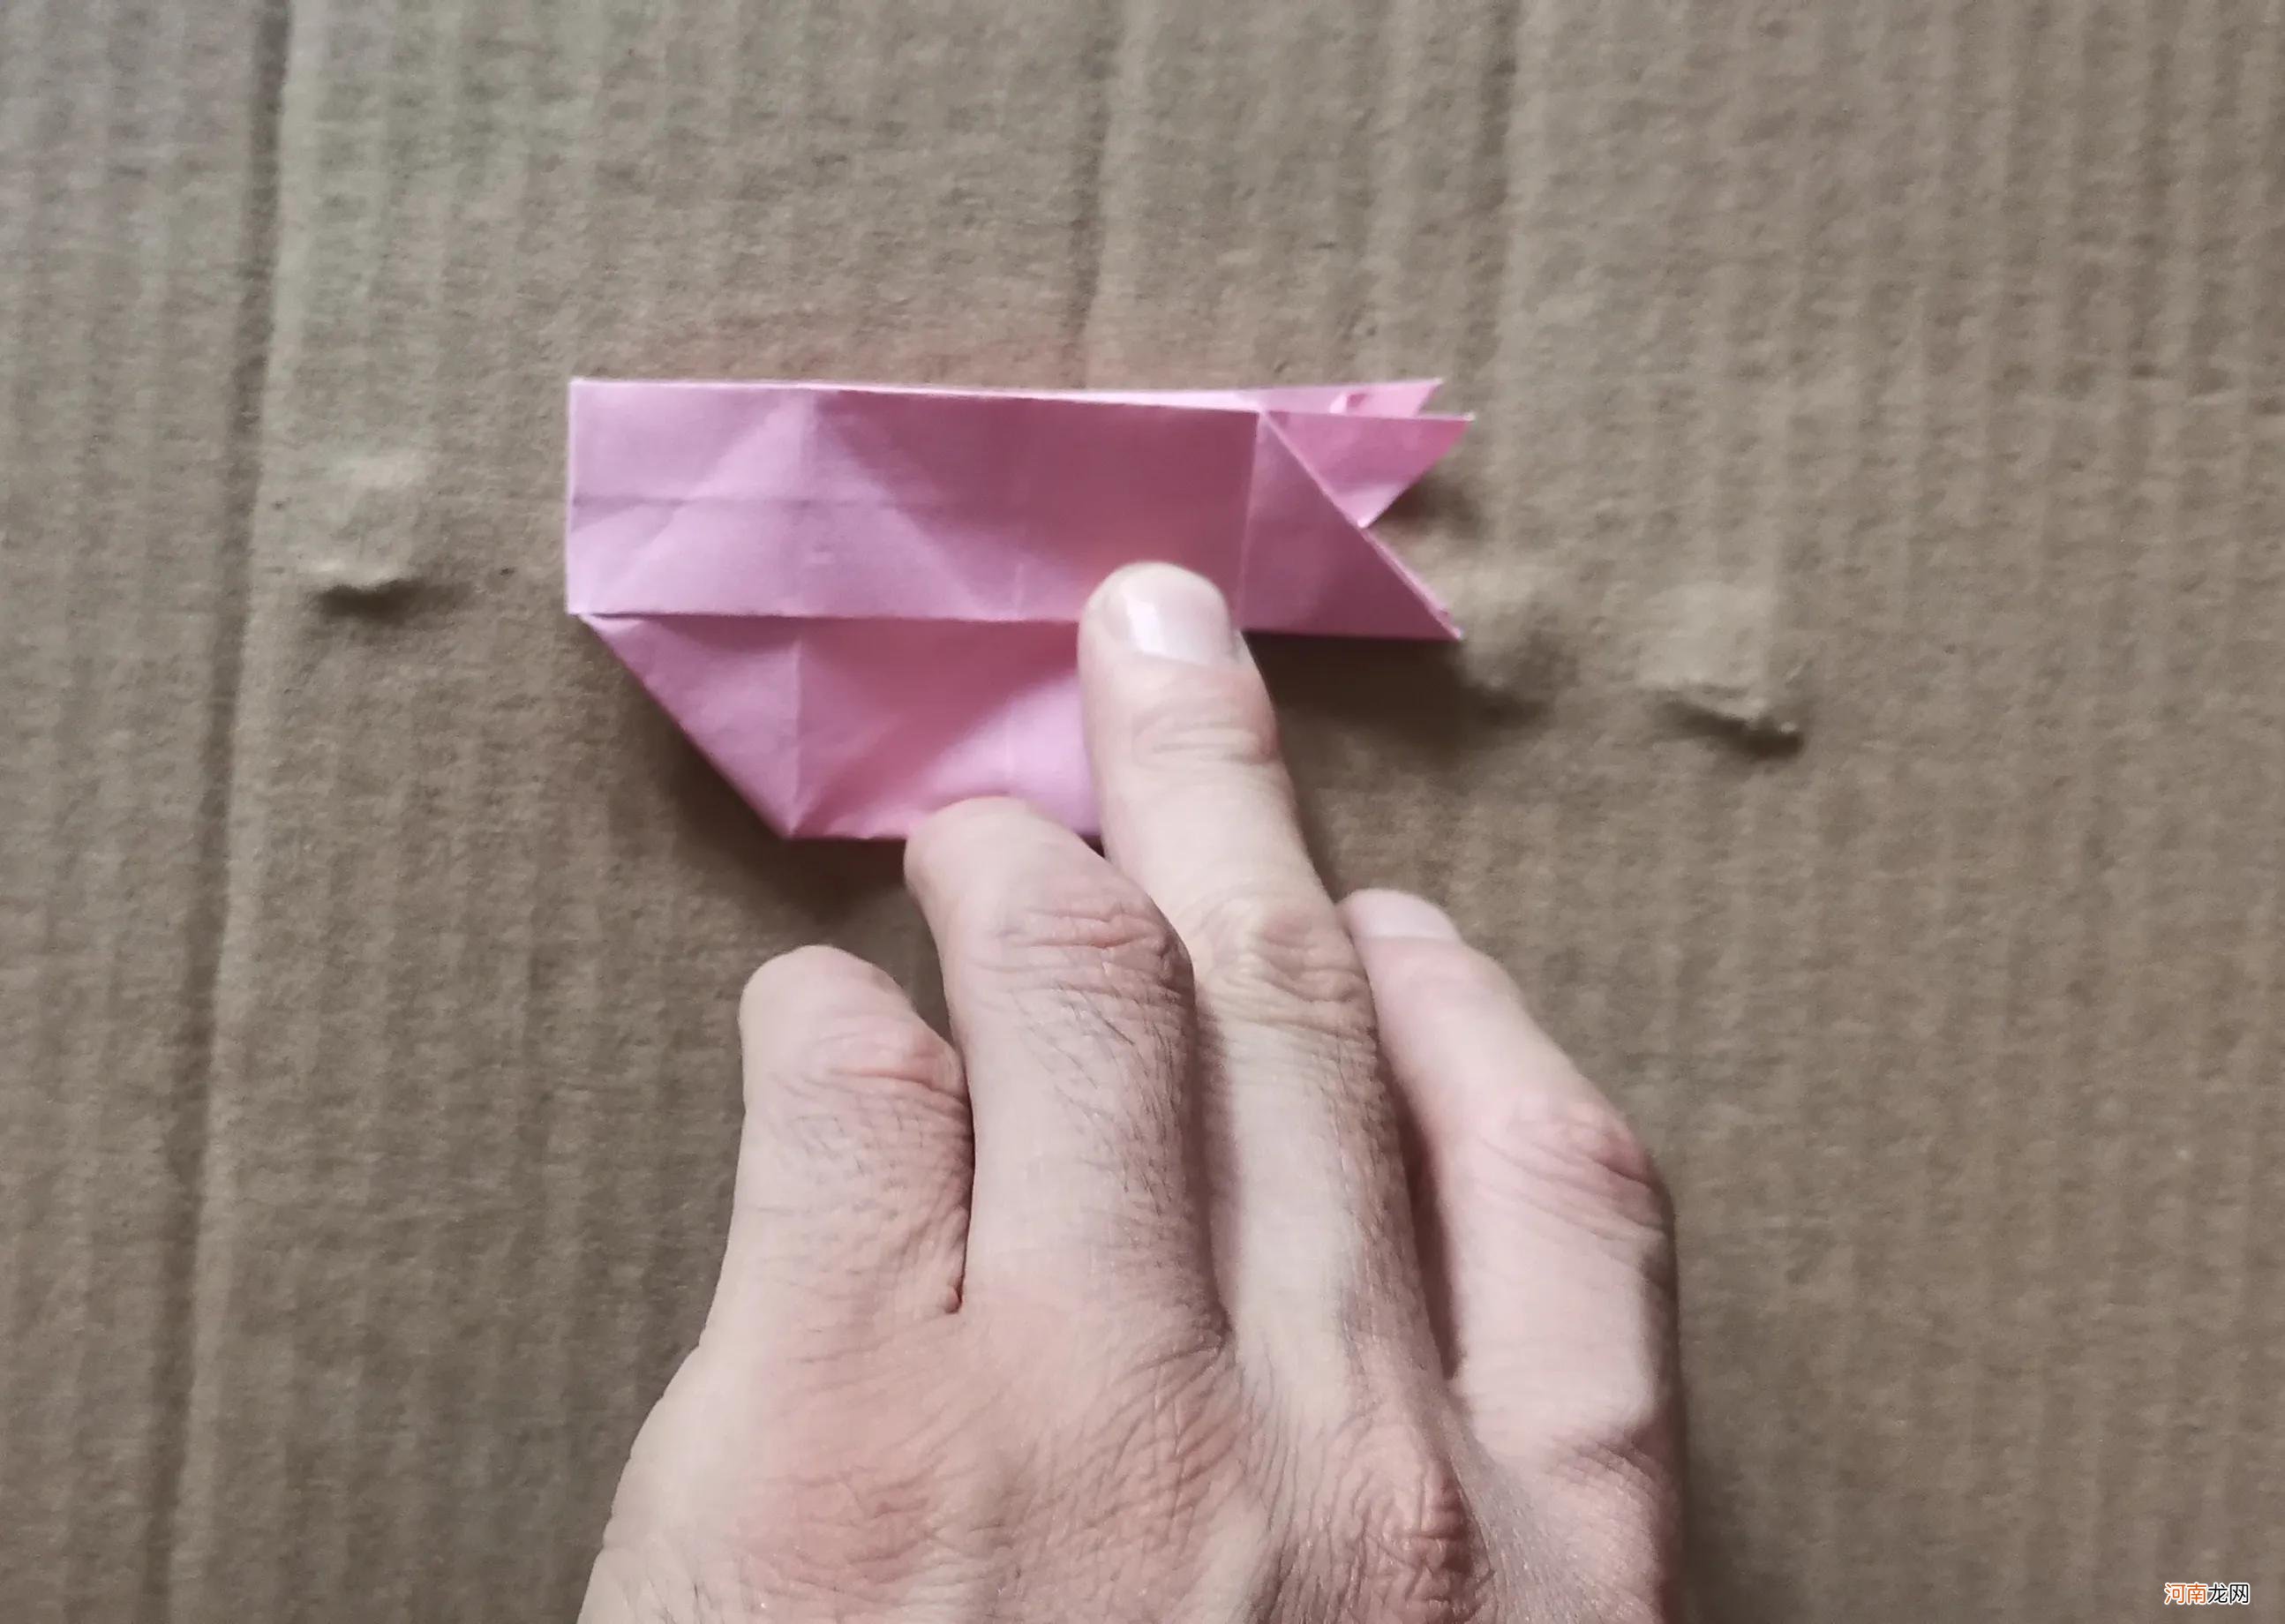 用彩纸折叠蝴蝶结 用彩纸折叠蝴蝶结